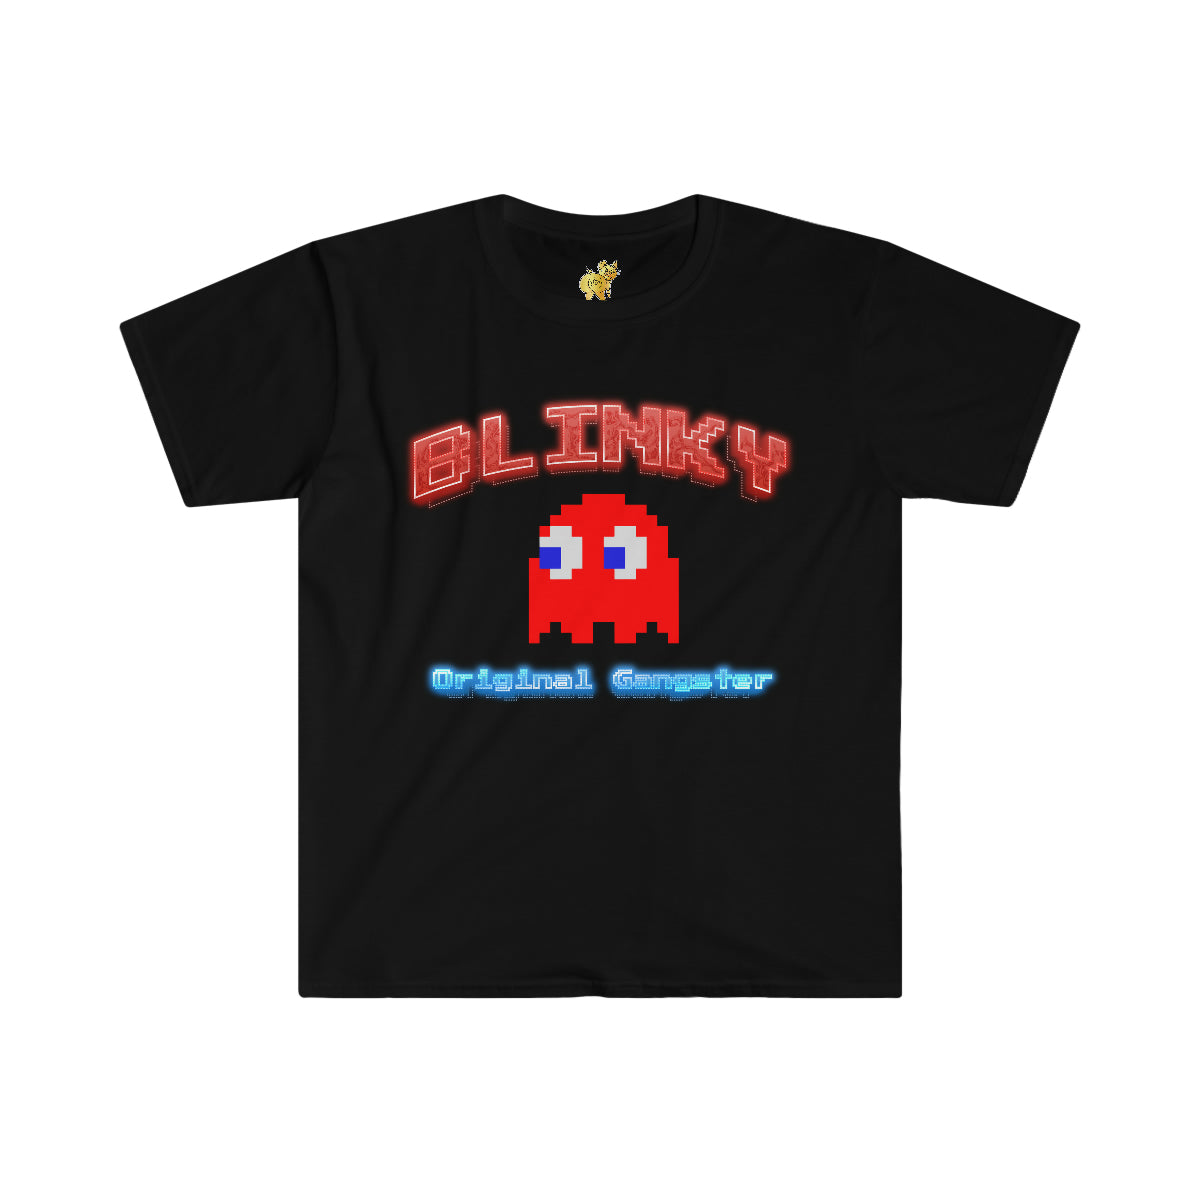 Blinky, Original Gangster